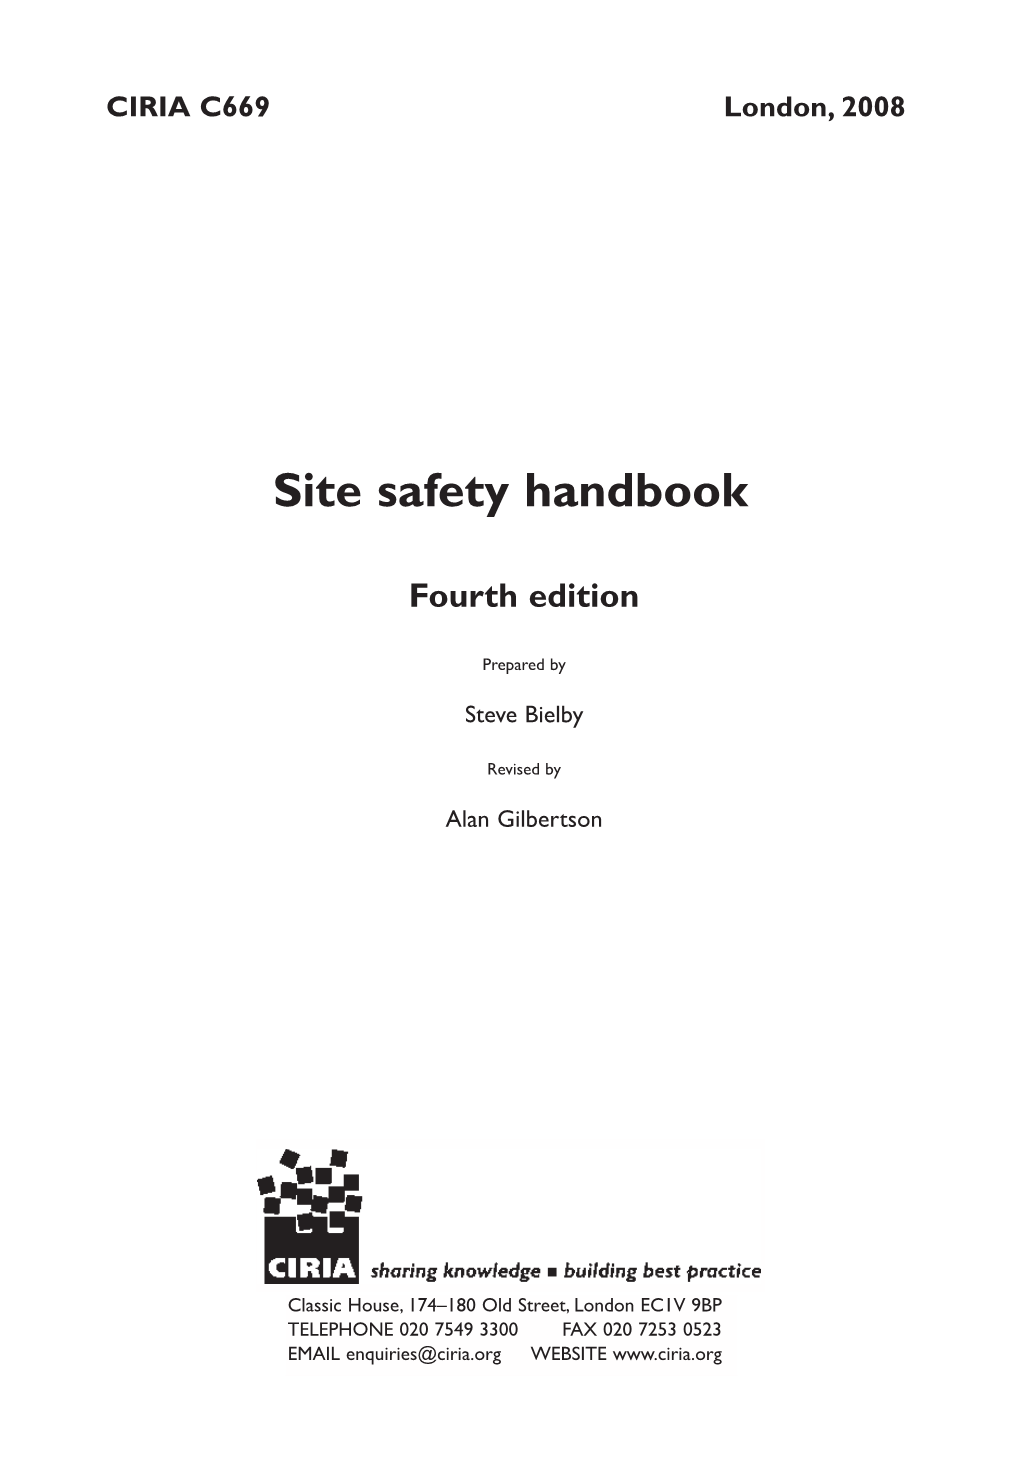 Site Safety Handbook